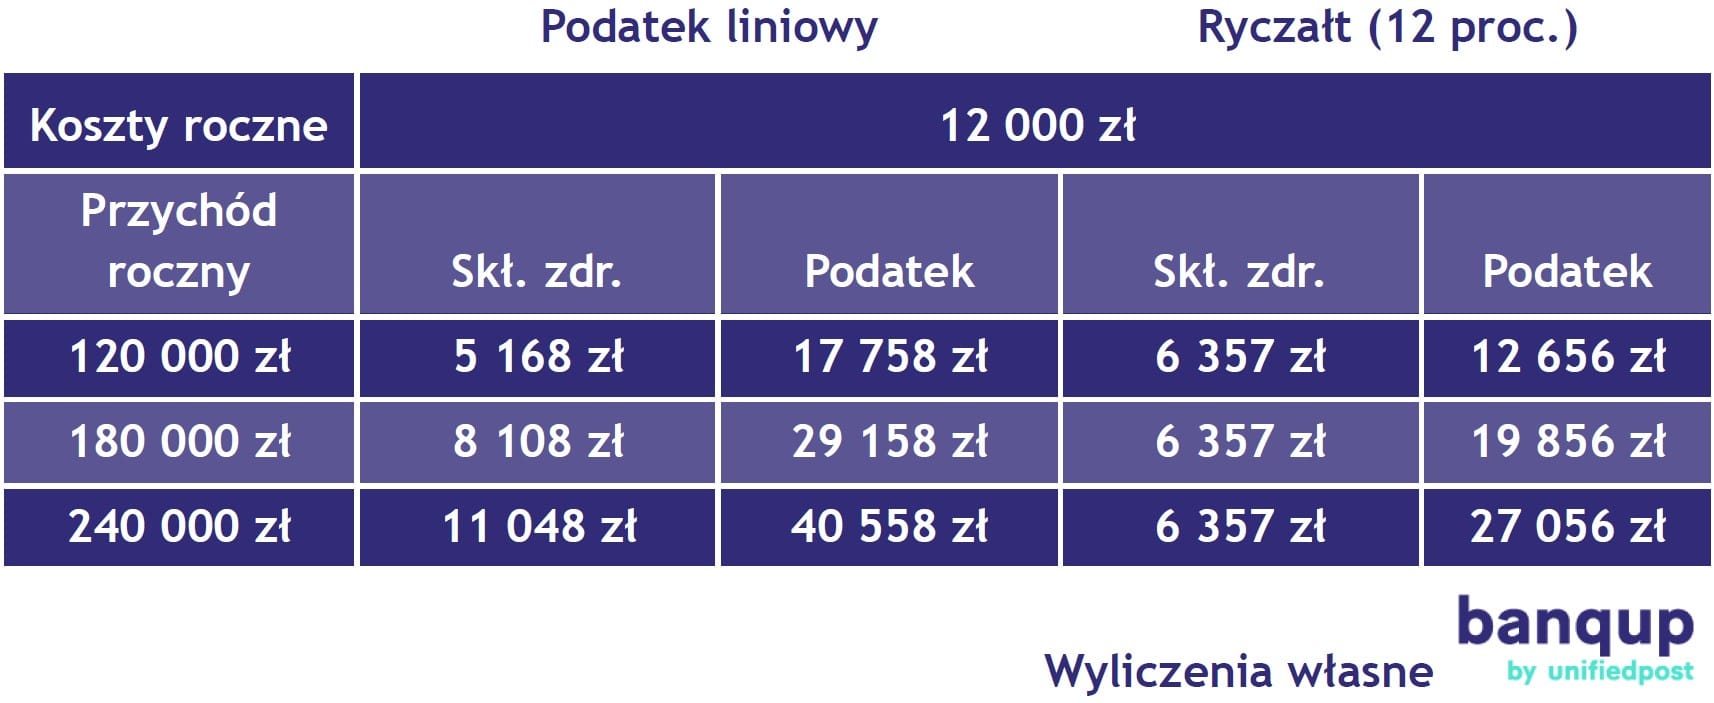 Polski Ład – w IT samozatrudnieni mogą oszczędzić ponad 10 tys. zł rocznie przechodząc na ryczałt